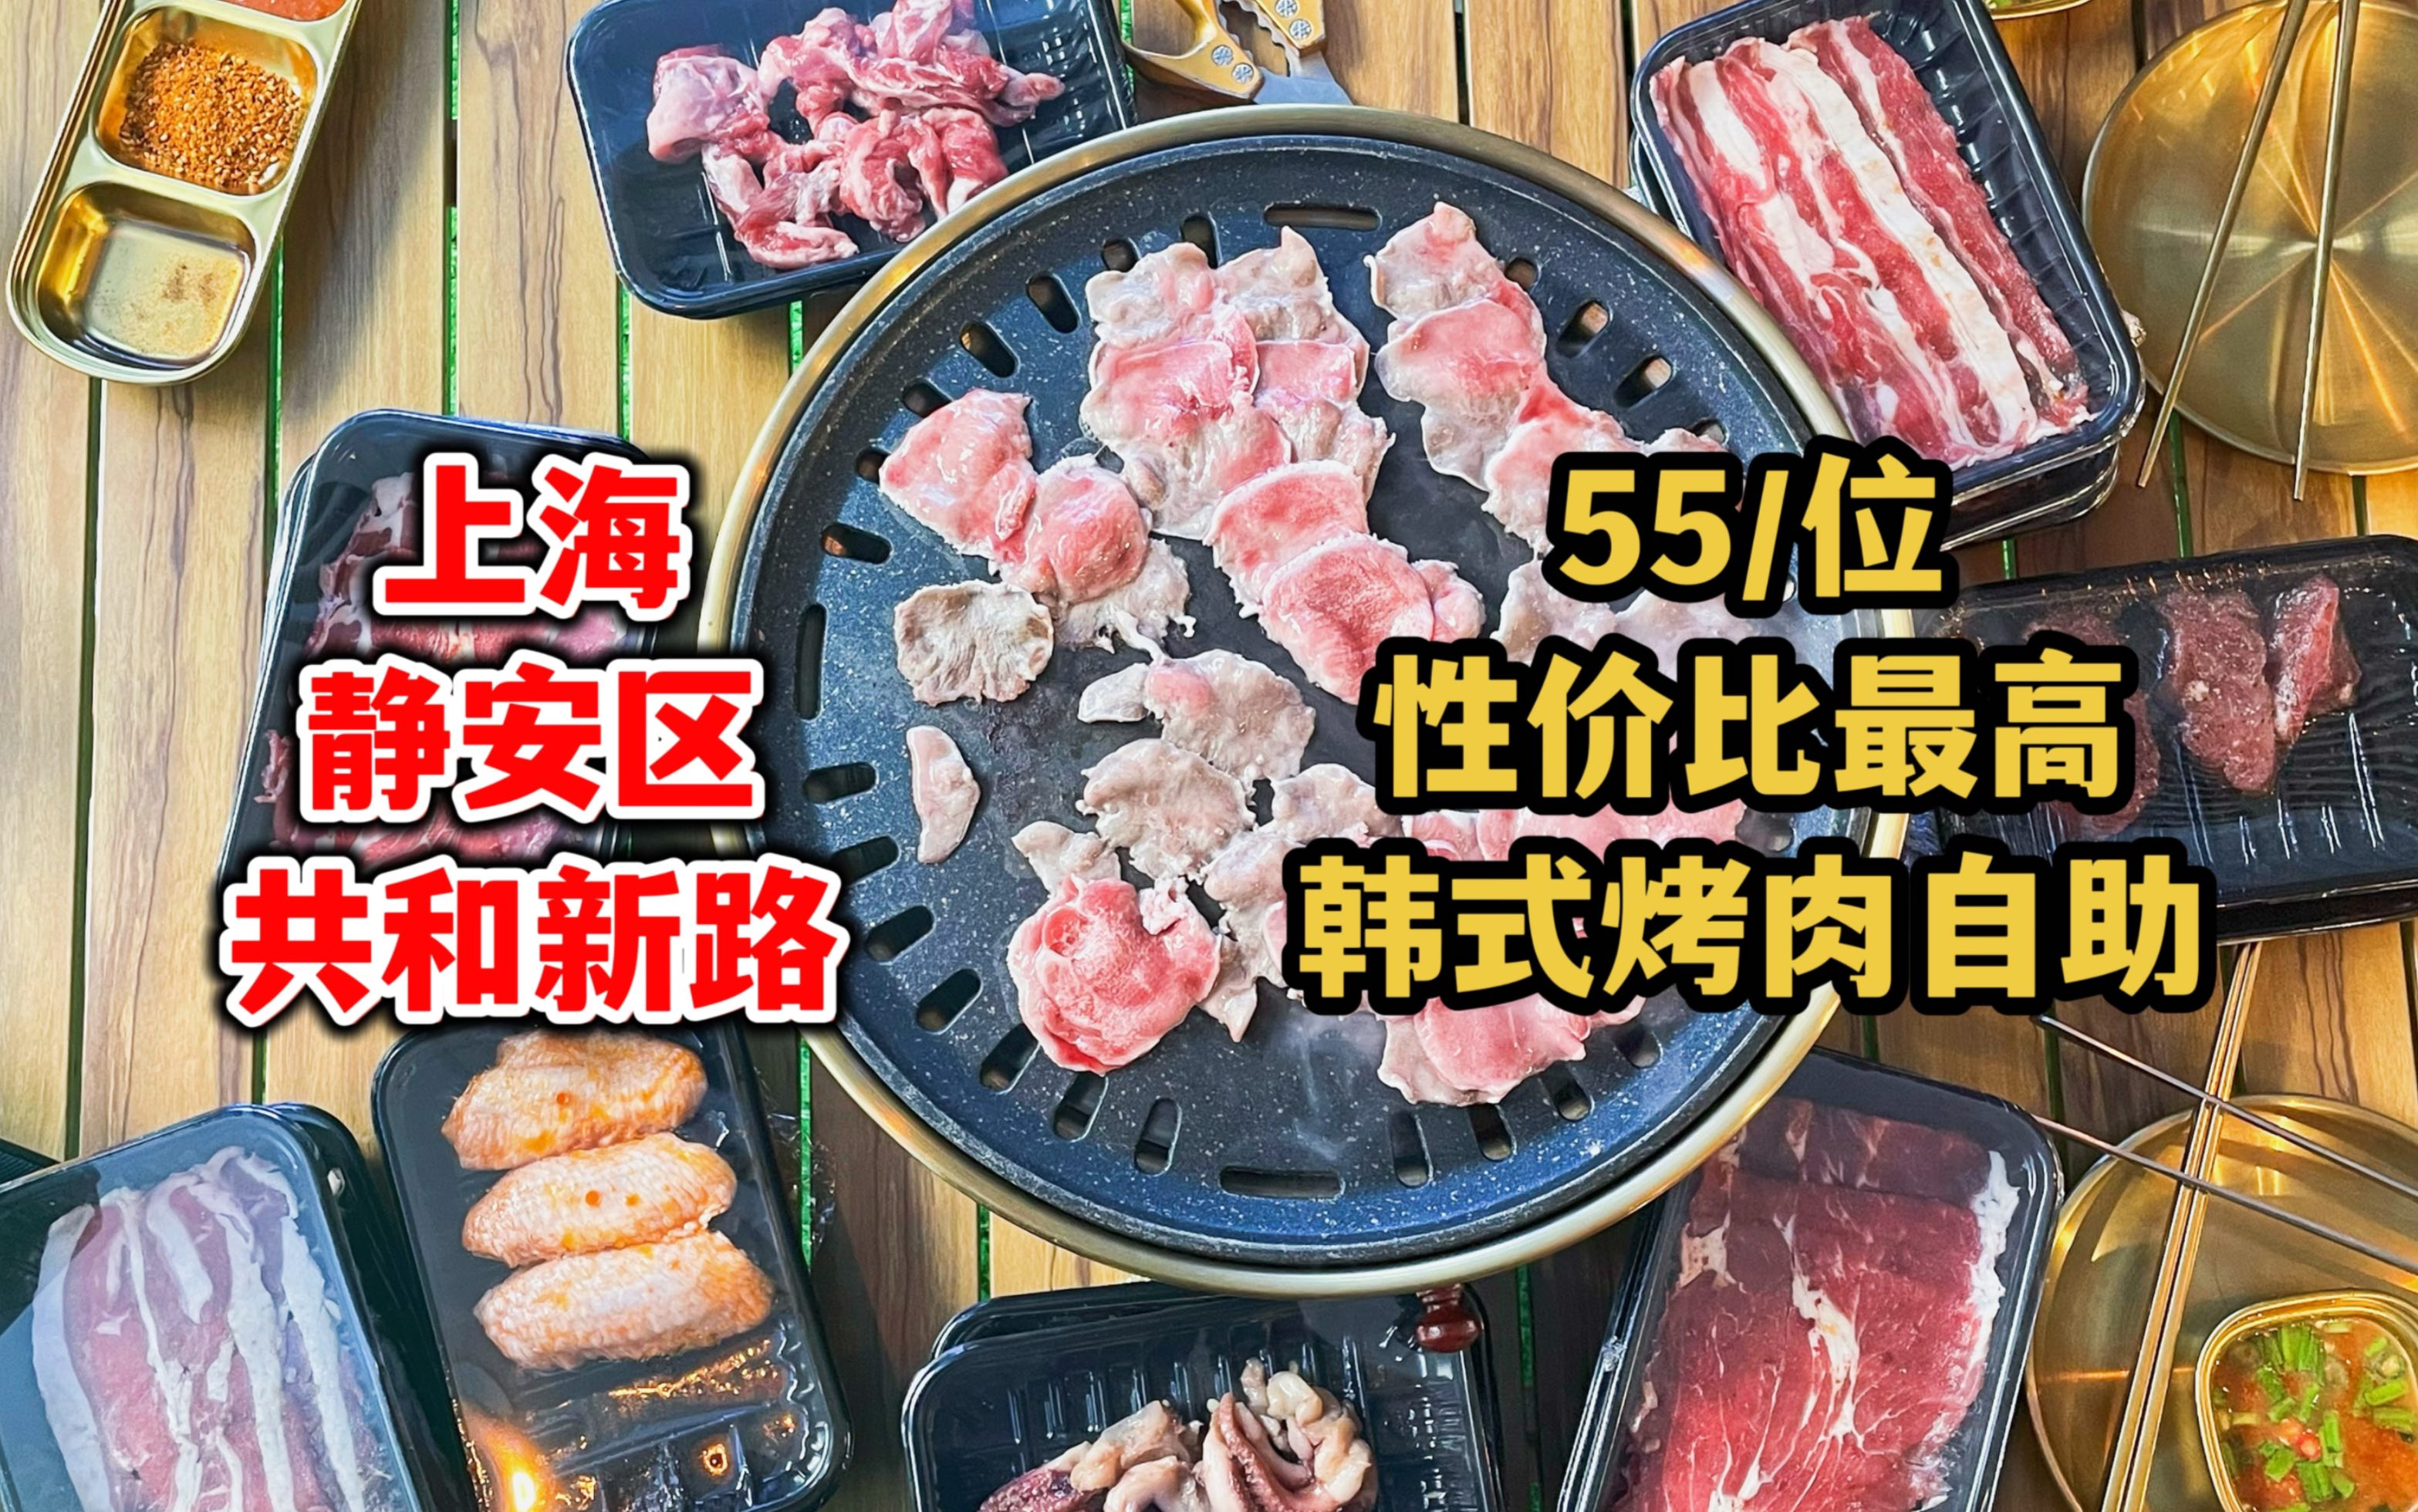 BBQ自助烧烤 - 锦江区桥语花廊农家乐